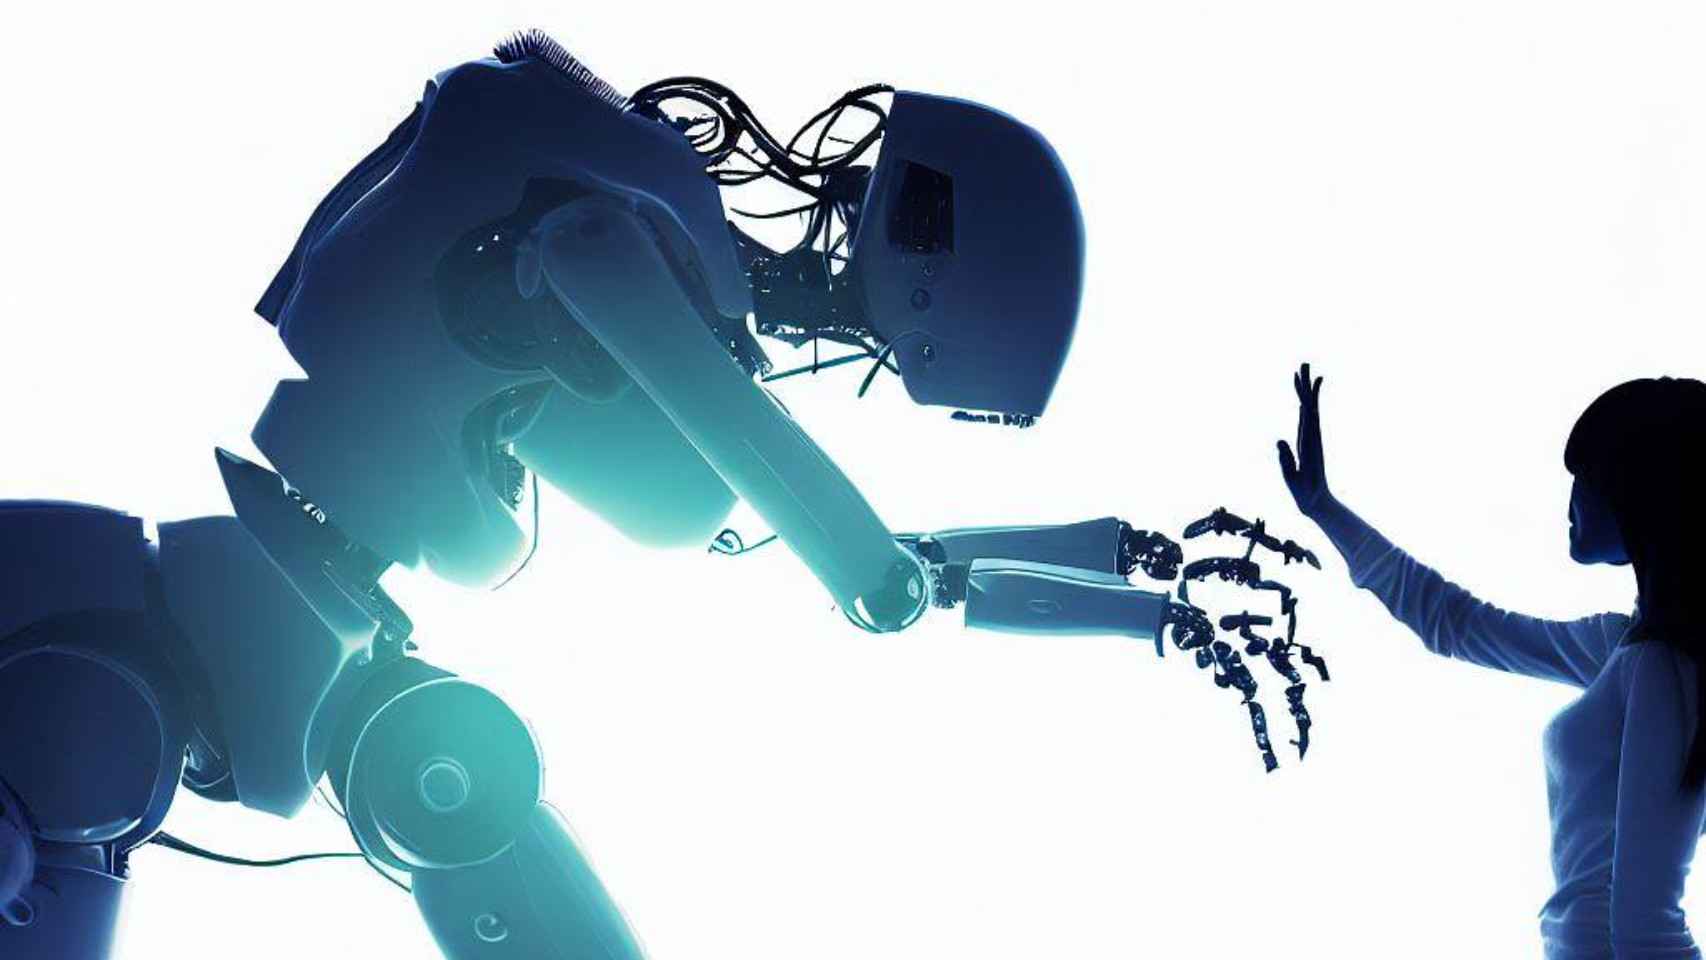 Representación de máquina y humano realizada por la IA de Bing